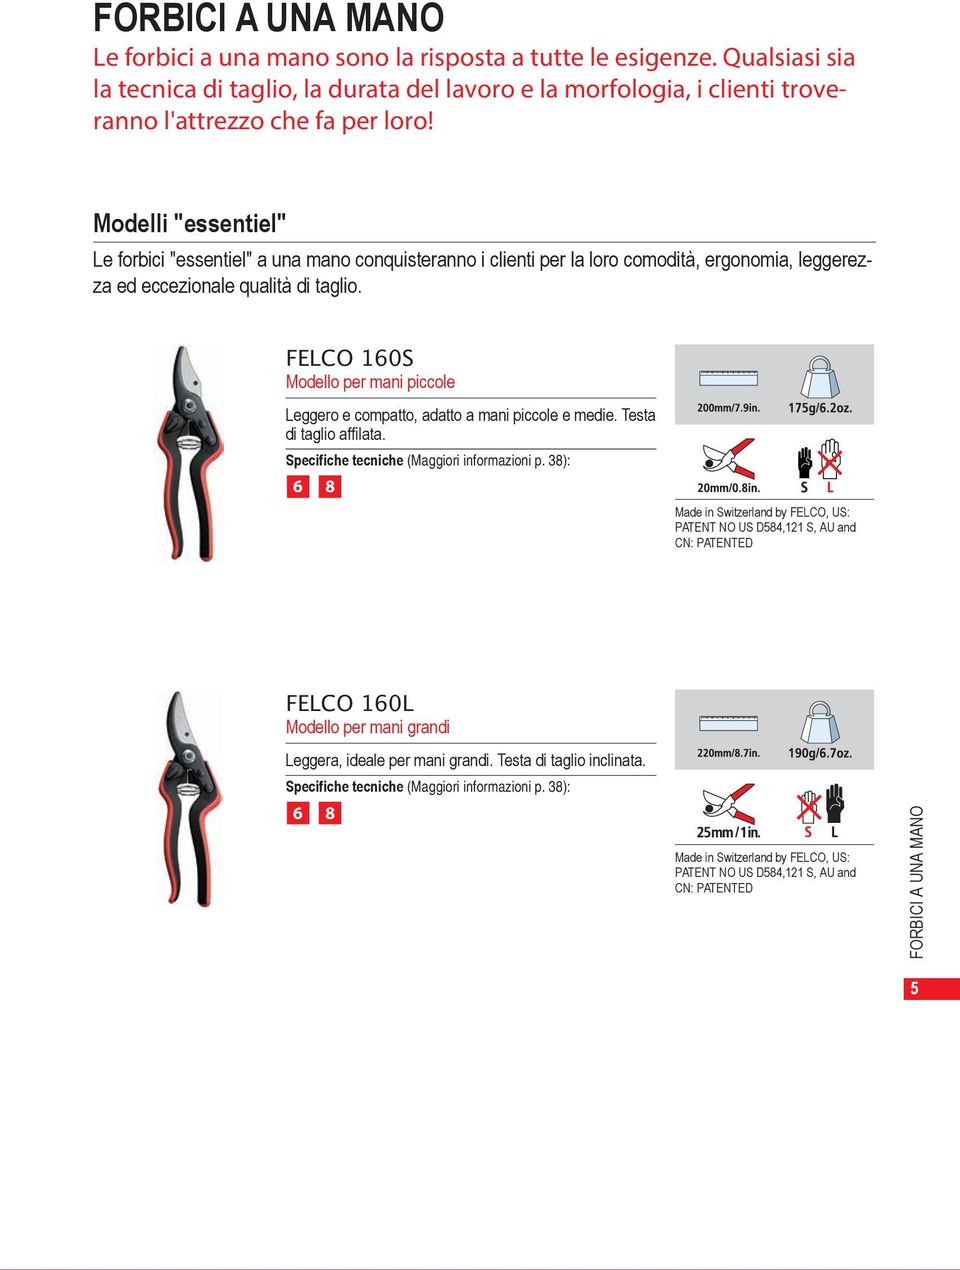 Modelli "essentiel" Le forbici "essentiel" a una mano conquisteranno i clienti per la loro comodità, ergonomia, leggerezza ed eccezionale qualità di taglio.